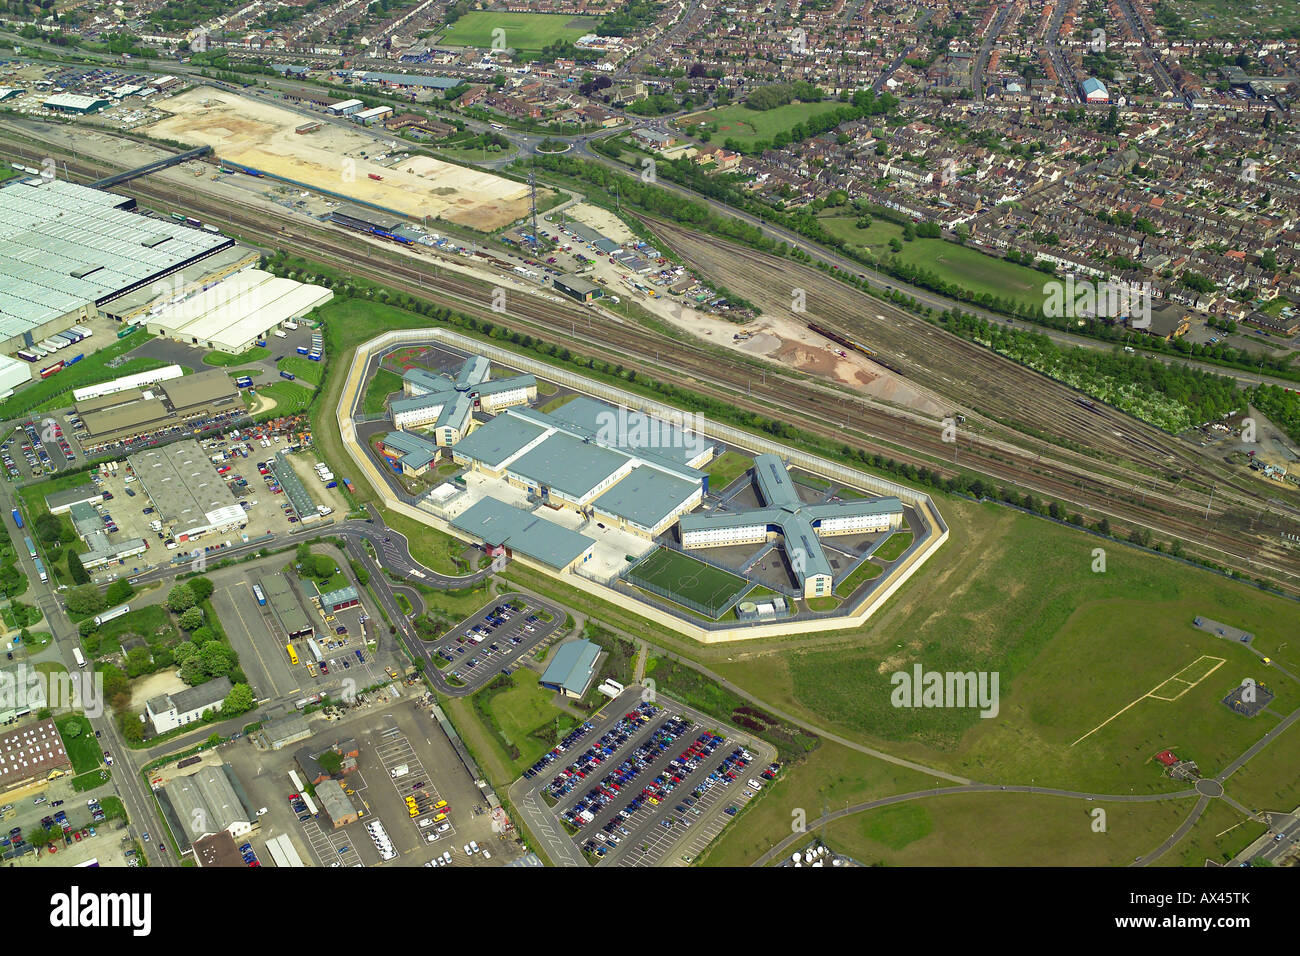 Vista aerea di Peterborough prigione che mostra la sua vicinanza alla sede locale e zone industriali, noto anche come HMP Peterborough Foto Stock